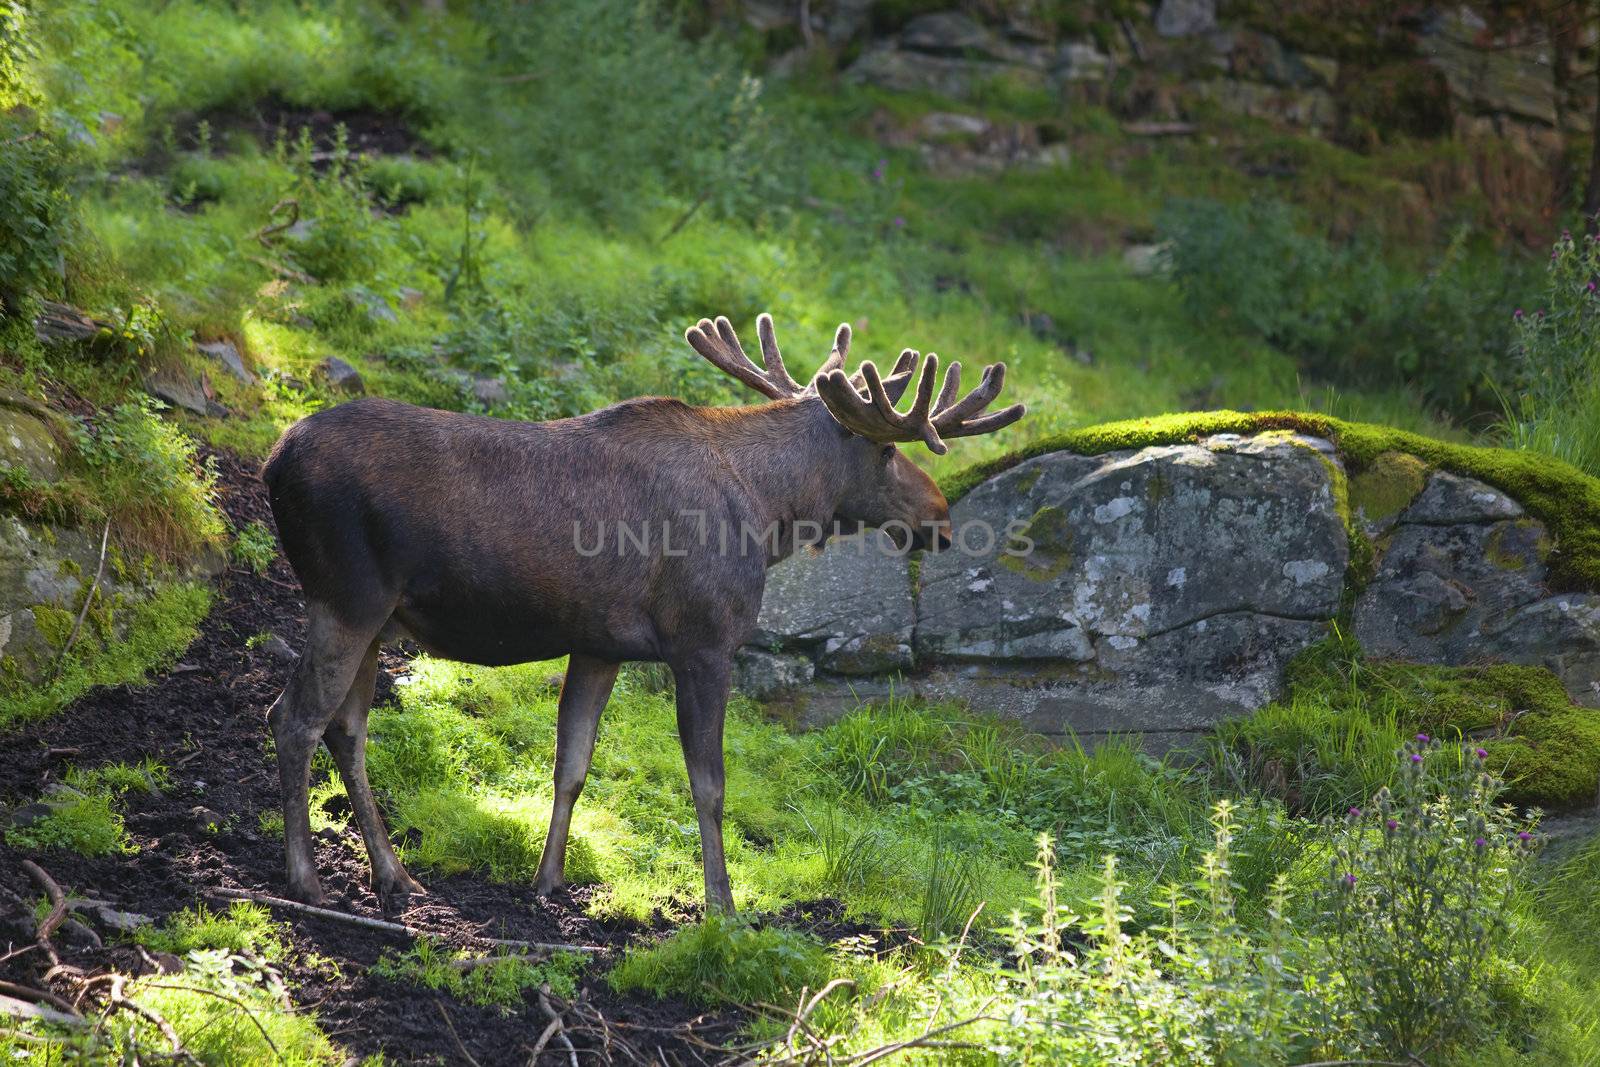 A moose walking in a Norwegian forest